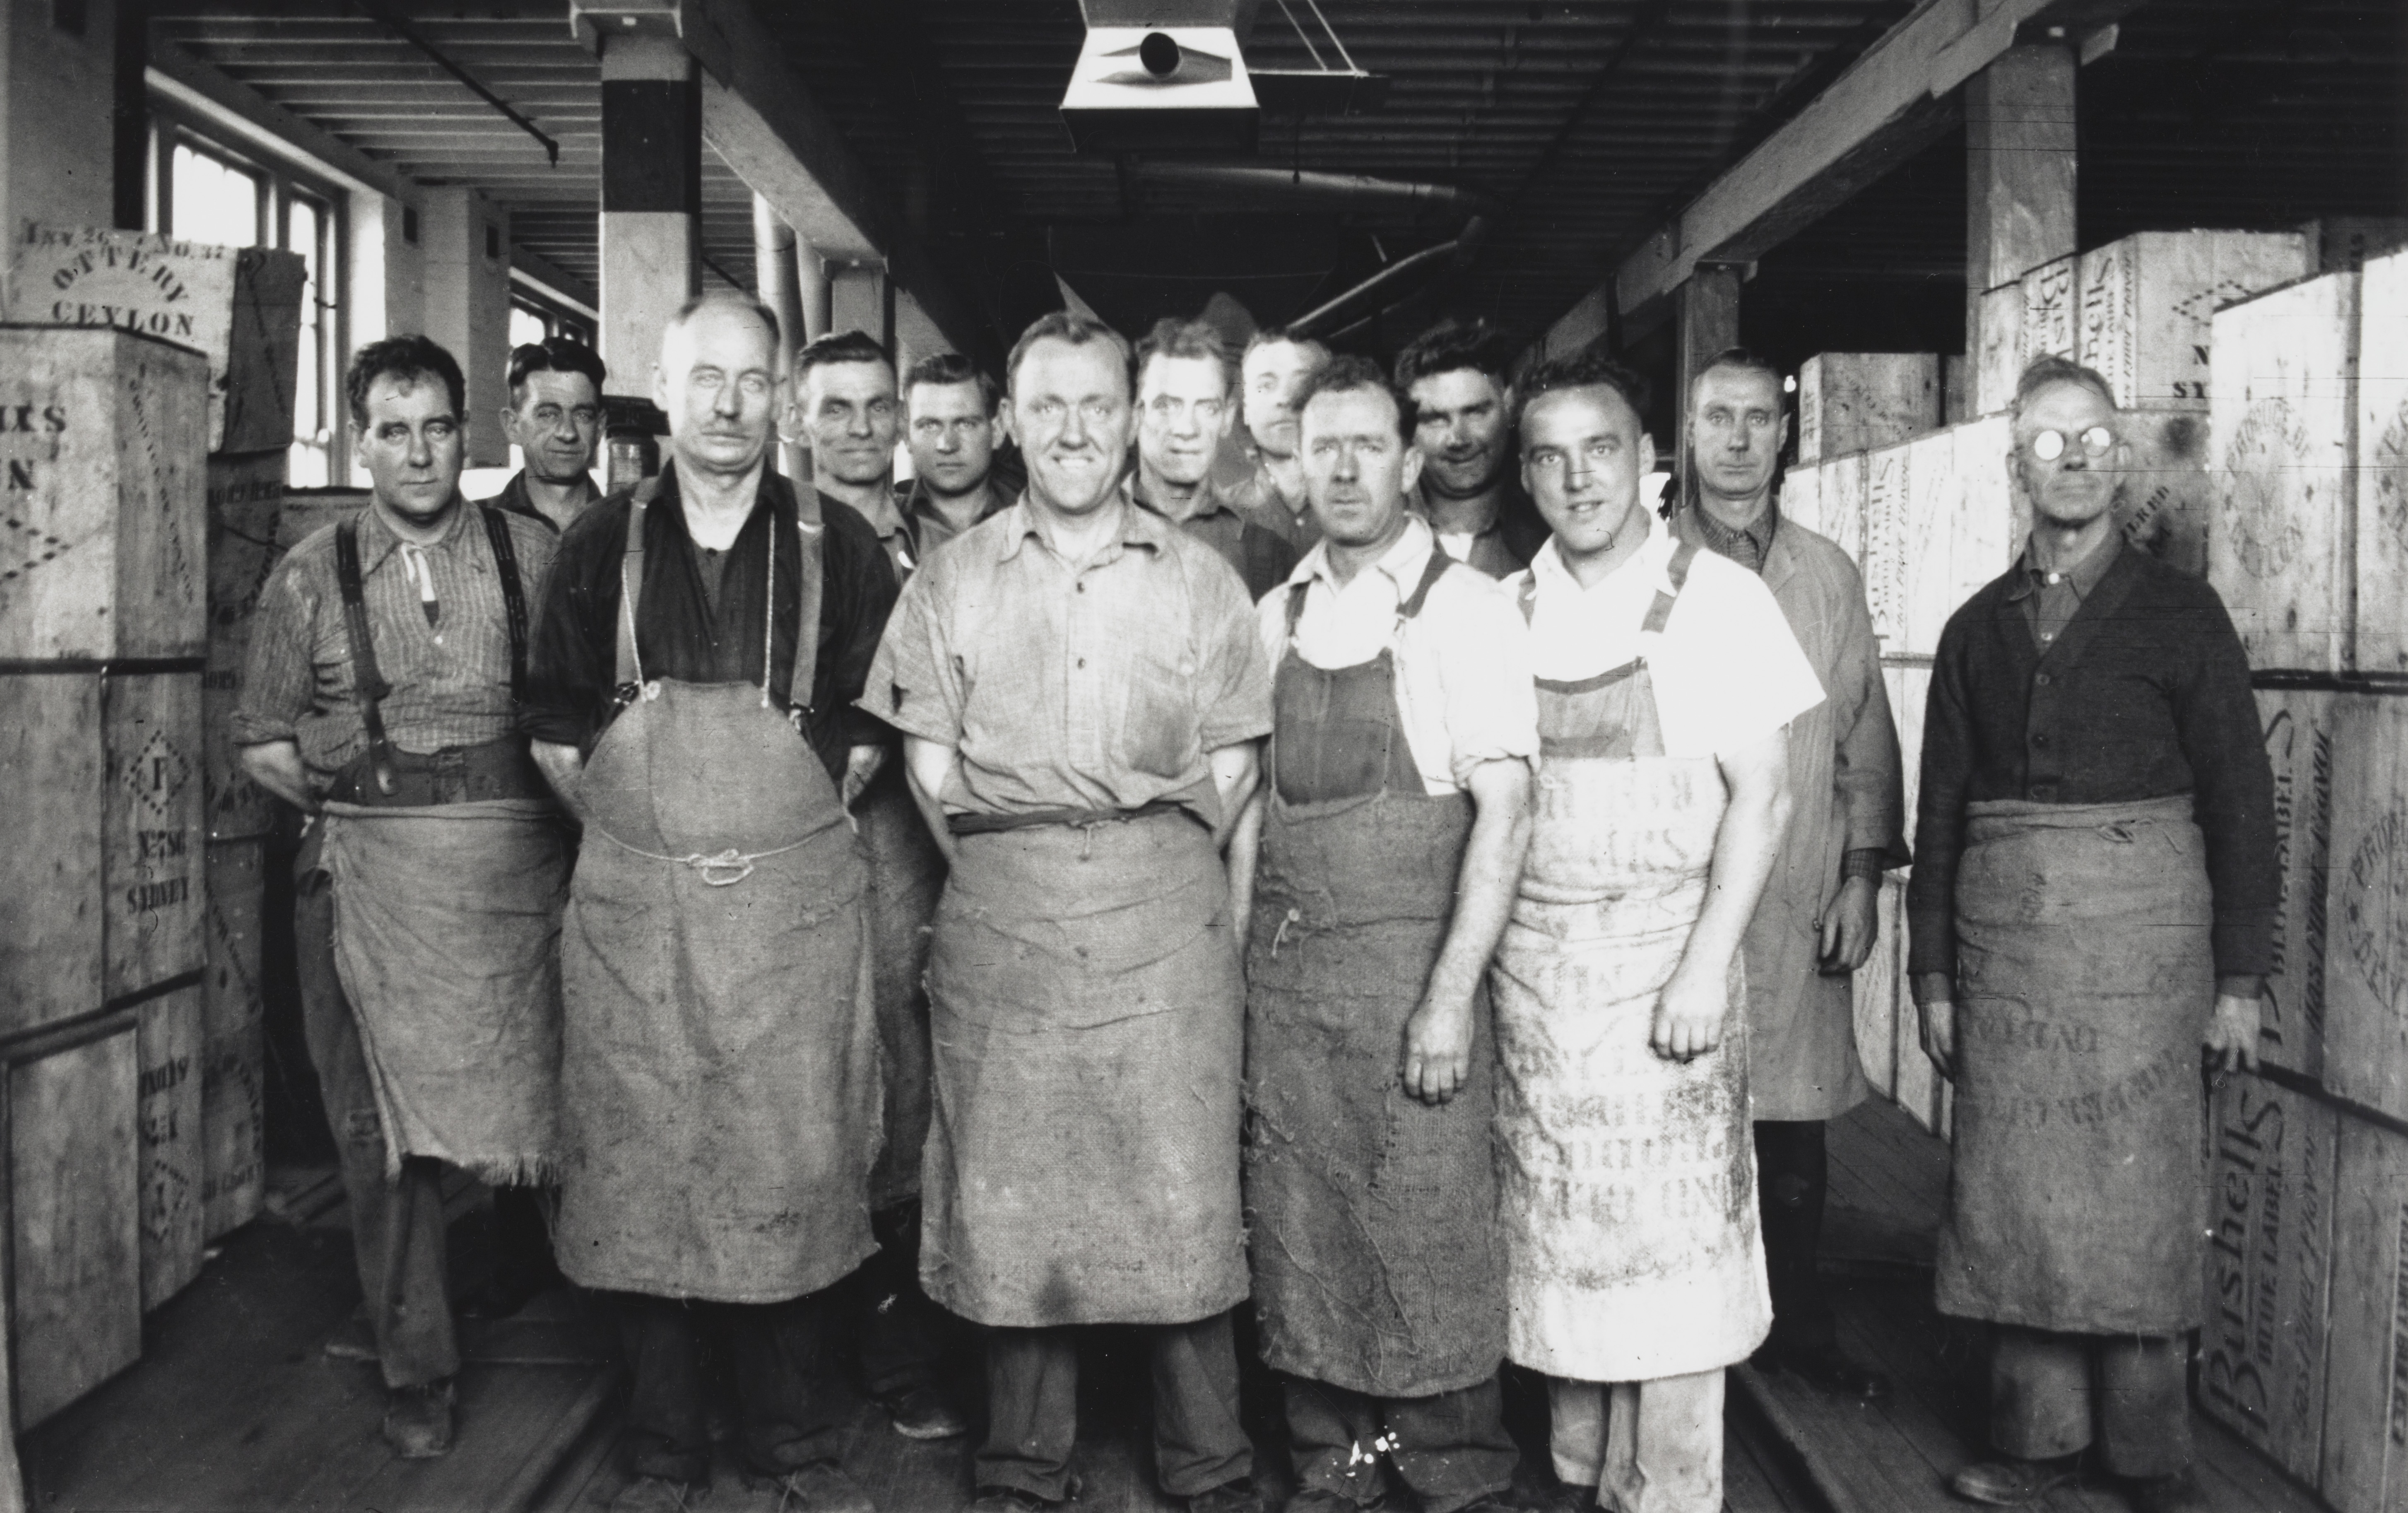 Tea blending Department staff, Bushells Tea Factory, Sydney, 1936, Sydney, PXE 1554